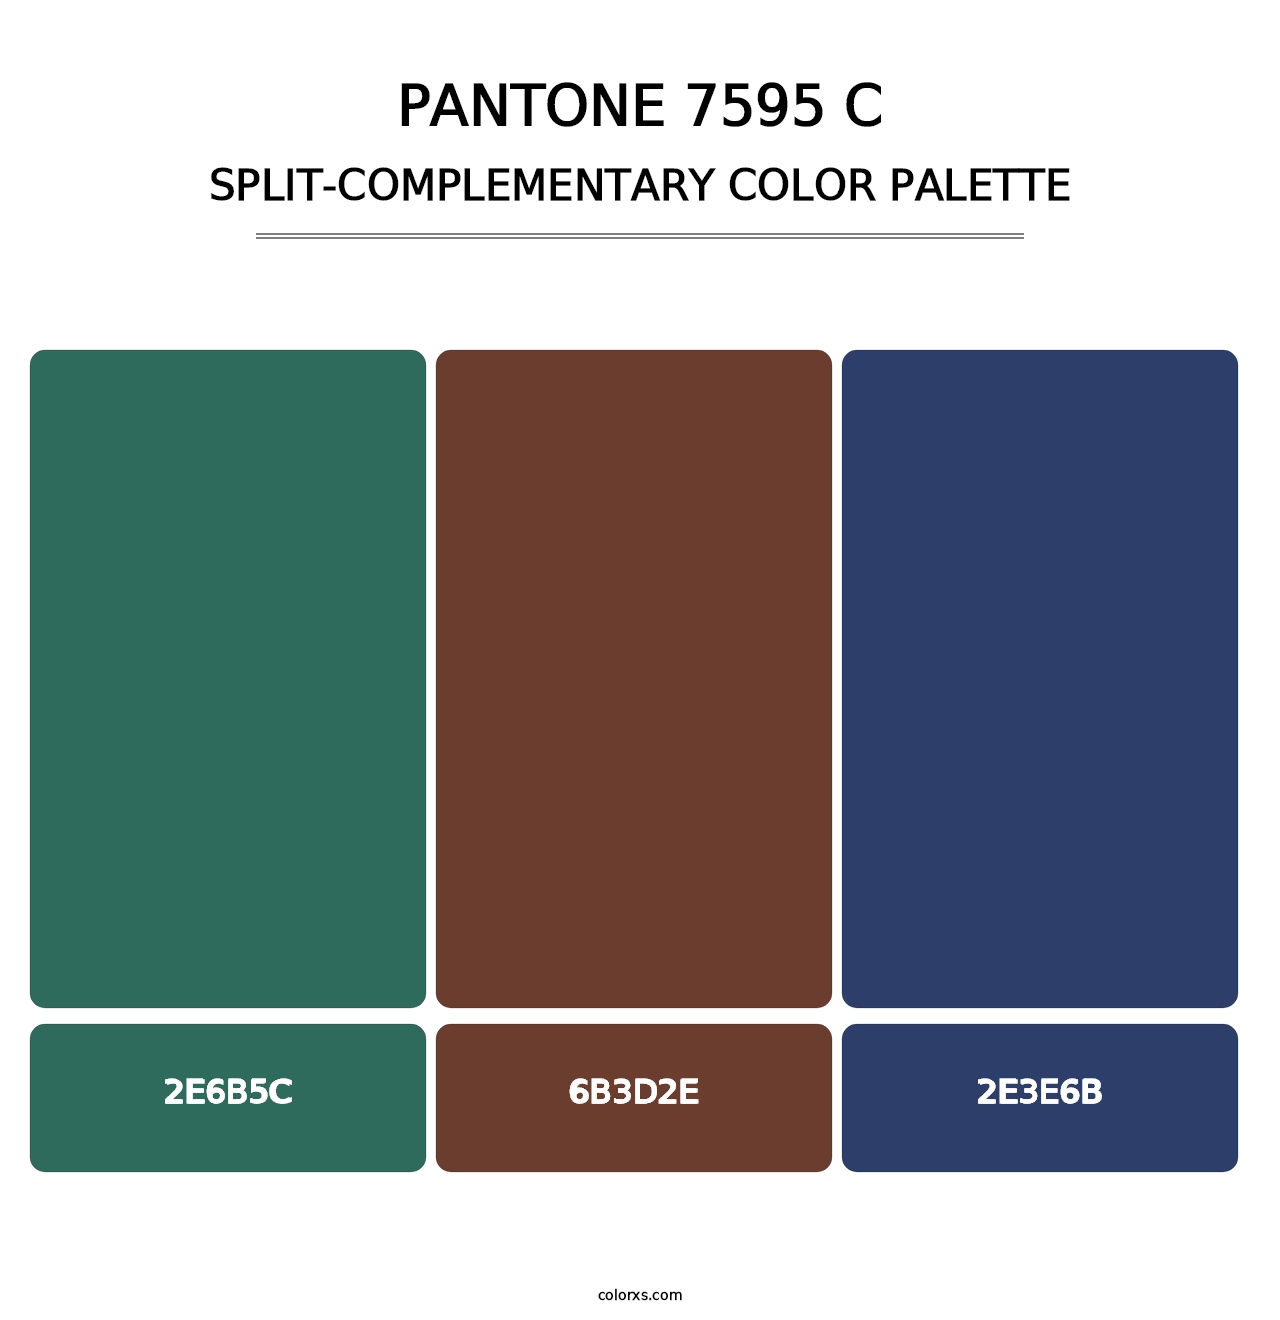 PANTONE 7595 C - Split-Complementary Color Palette